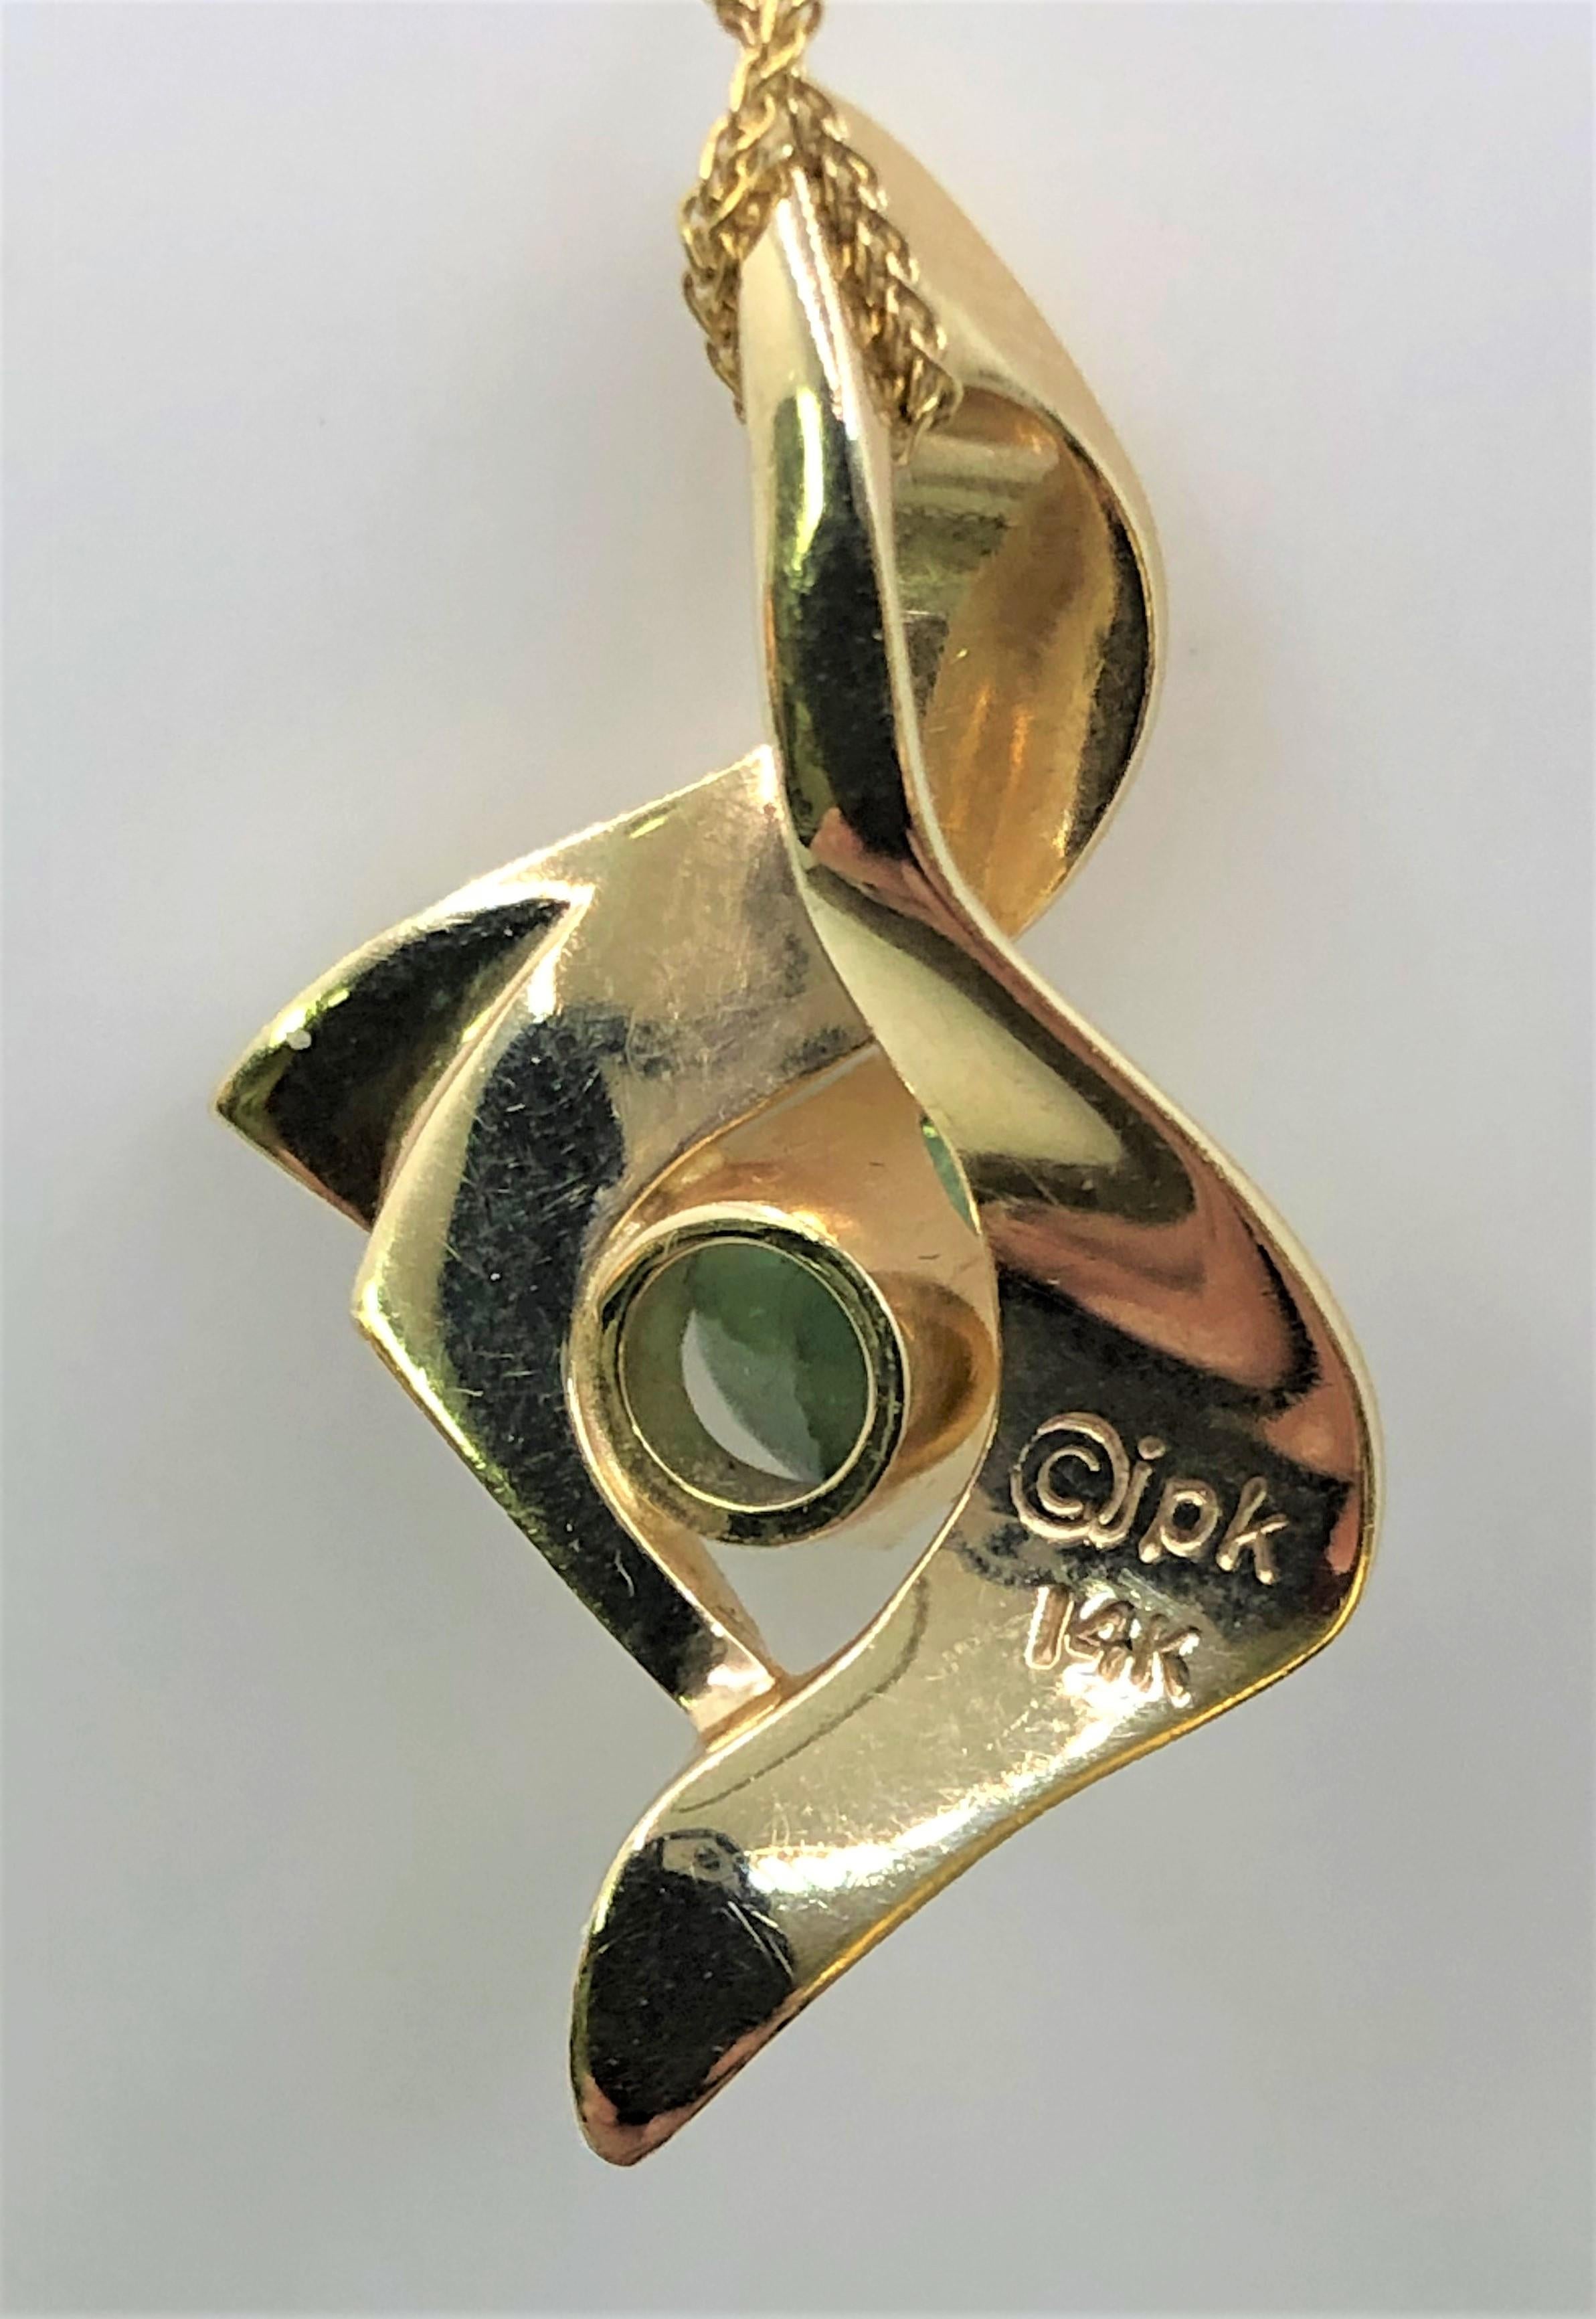 Par Avirom et Associés Designer Jewelry
pendentif artistique en or jaune 14 carats, de forme libre, avec une belle tourmaline verte.
1.32ct de tourmaline verte.
chaîne spiga en or jaune 14 carats de 0,8 mm, 16 pouces, fermoir à griffe de